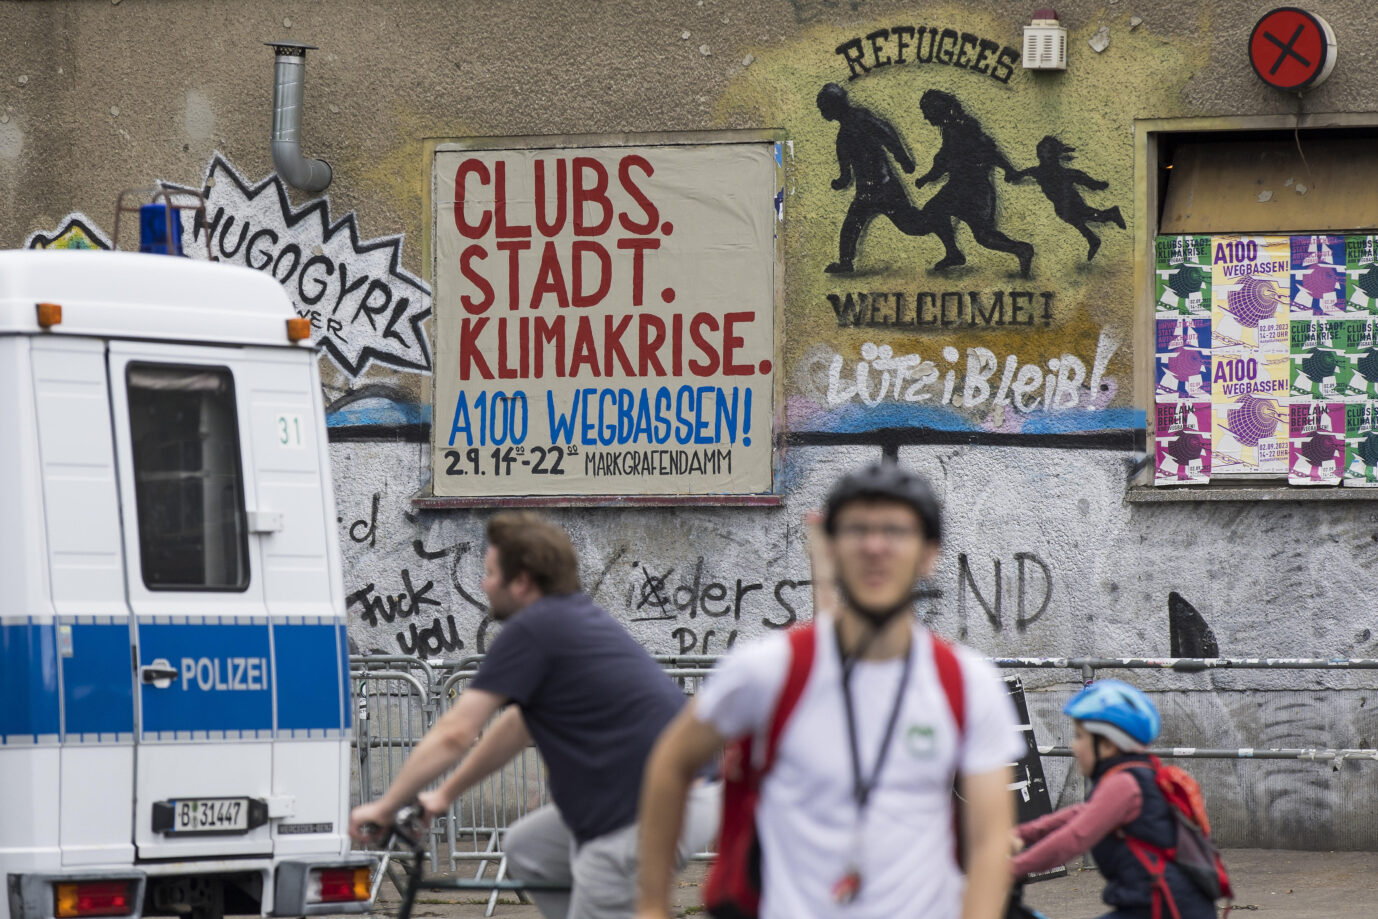 Auf dem Foto befindet sich ein Technoklub mit der linken Symbolik und einem Demoaufruf gegen die Autobahn A100 und die AfD. (Themenbild/Symbolbild)